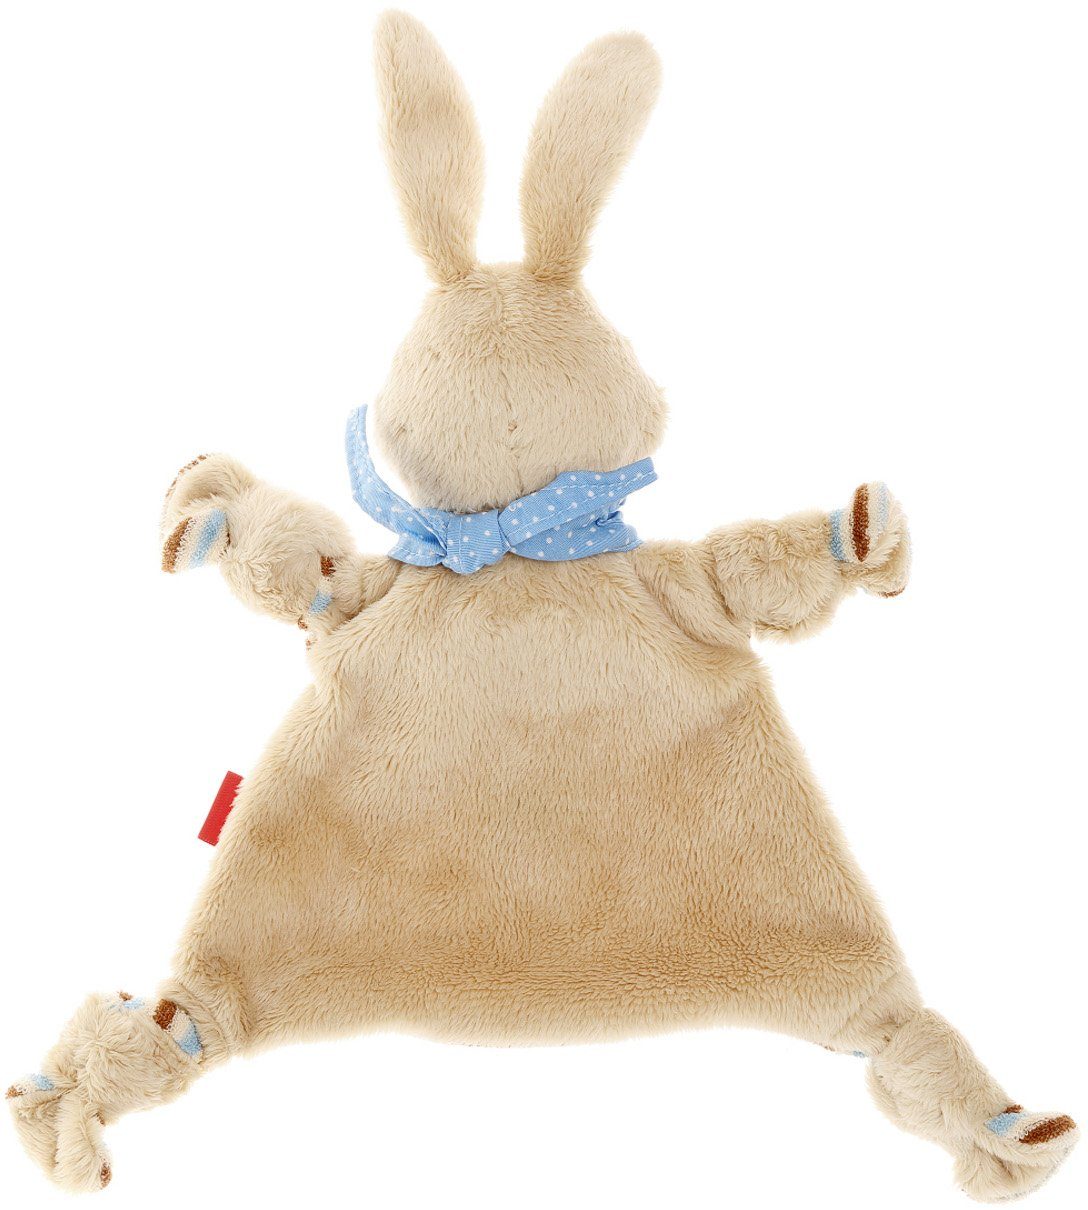 Sigikid Schnuffeltuch Europe Made Semmel Bunny, in beige